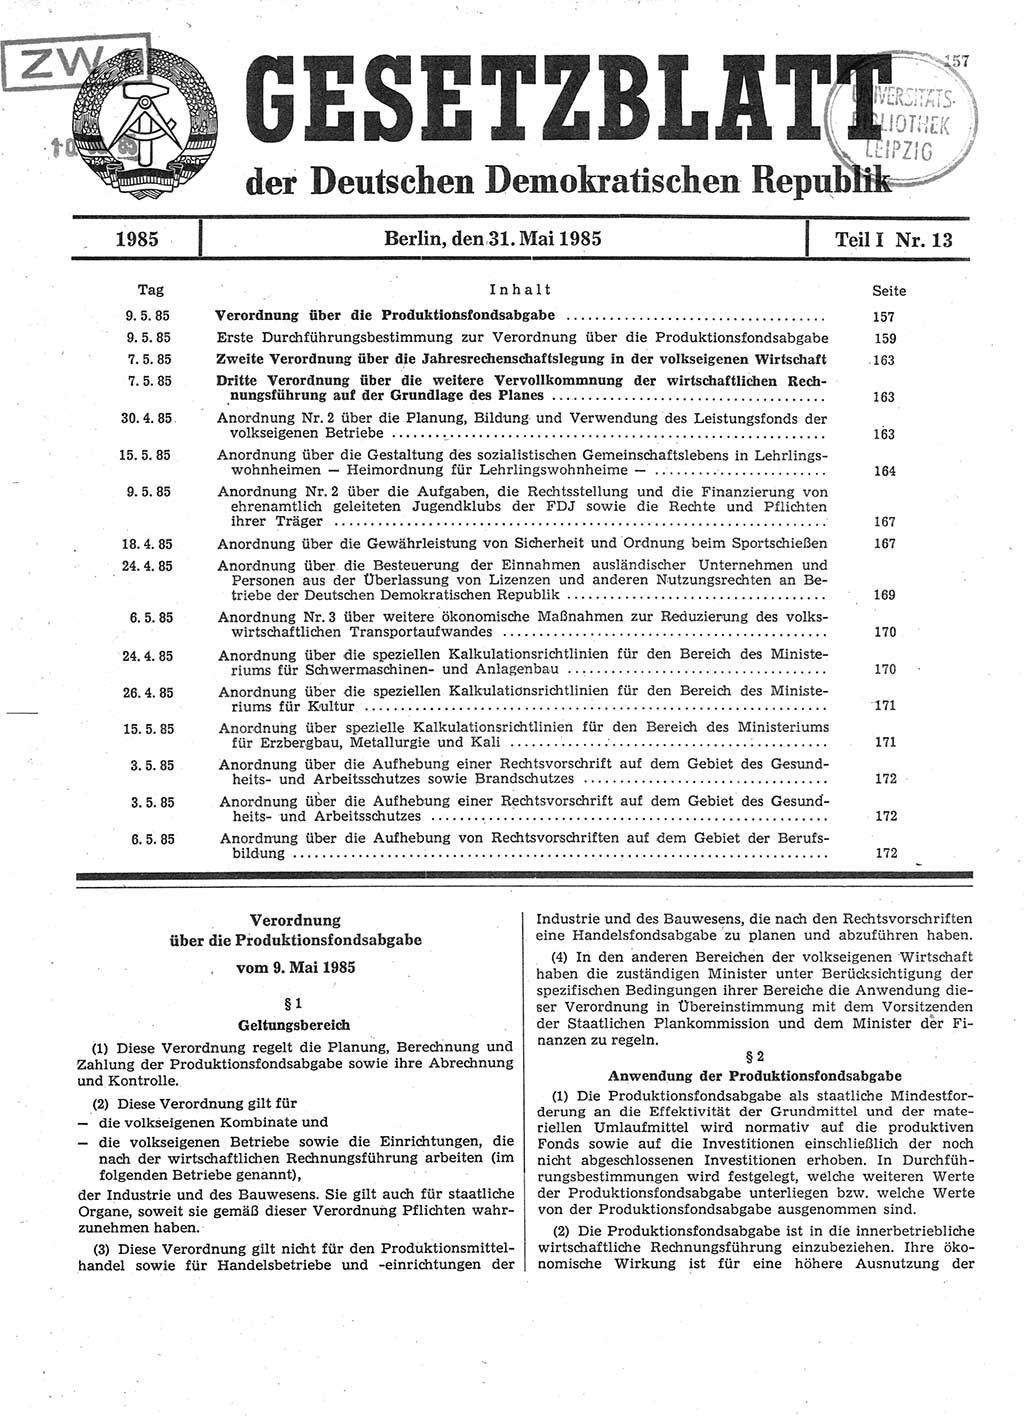 Gesetzblatt (GBl.) der Deutschen Demokratischen Republik (DDR) Teil Ⅰ 1985, Seite 157 (GBl. DDR Ⅰ 1985, S. 157)